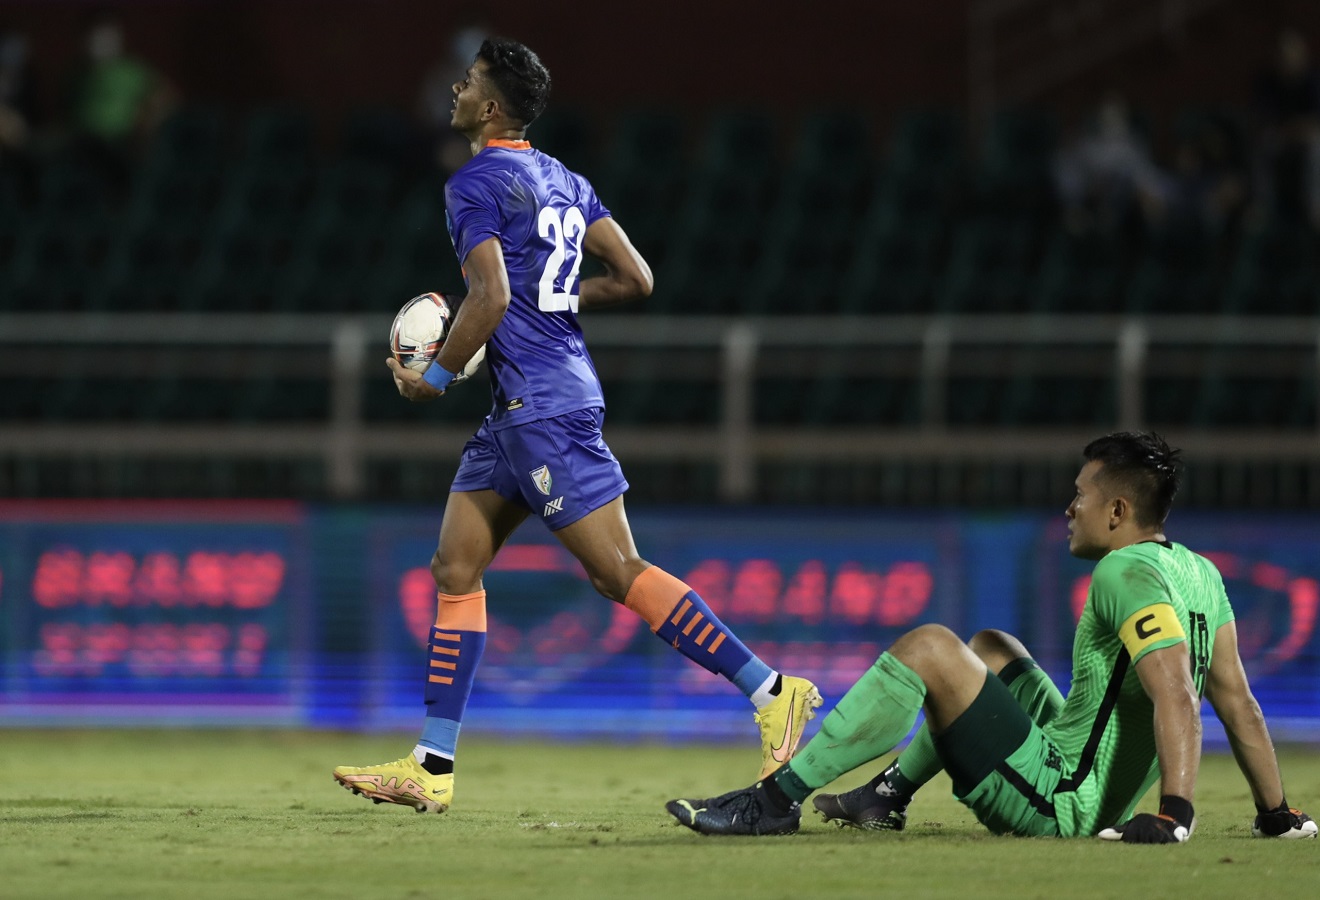 Ấn Độ 1-1 Singapore: Ấn Độ bất ngờ bị cầm chân, ĐT Việt Nam tràn đầy cơ hội vô địch - ảnh 2